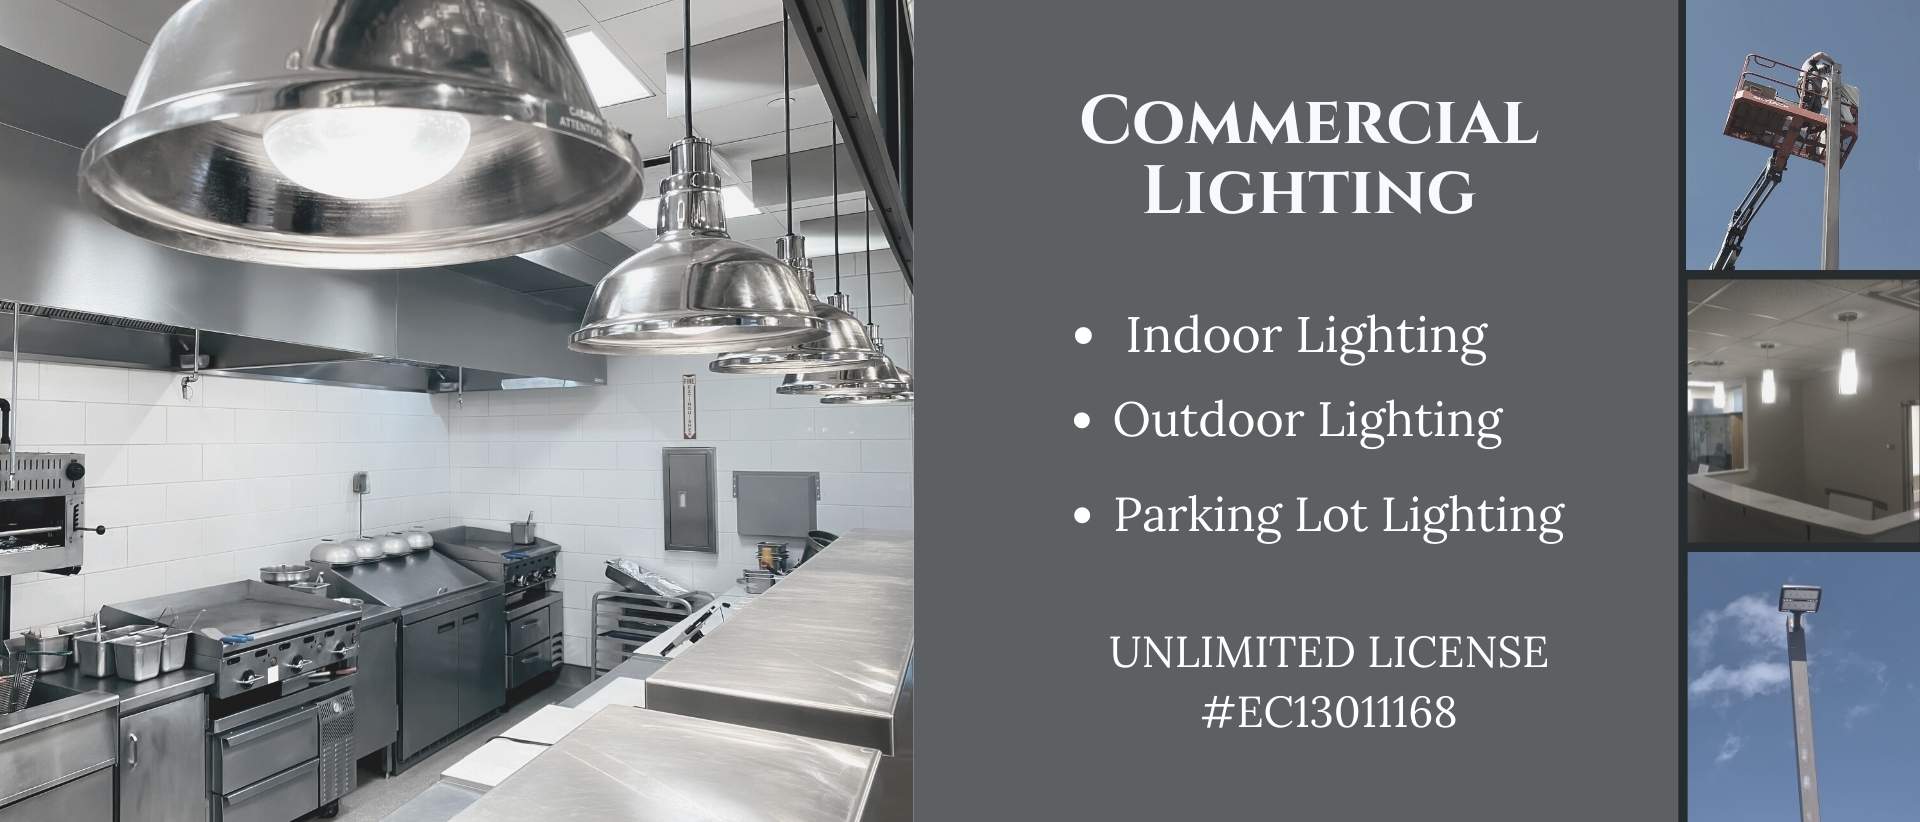 Pendant commercial lighting & parking lot lighting